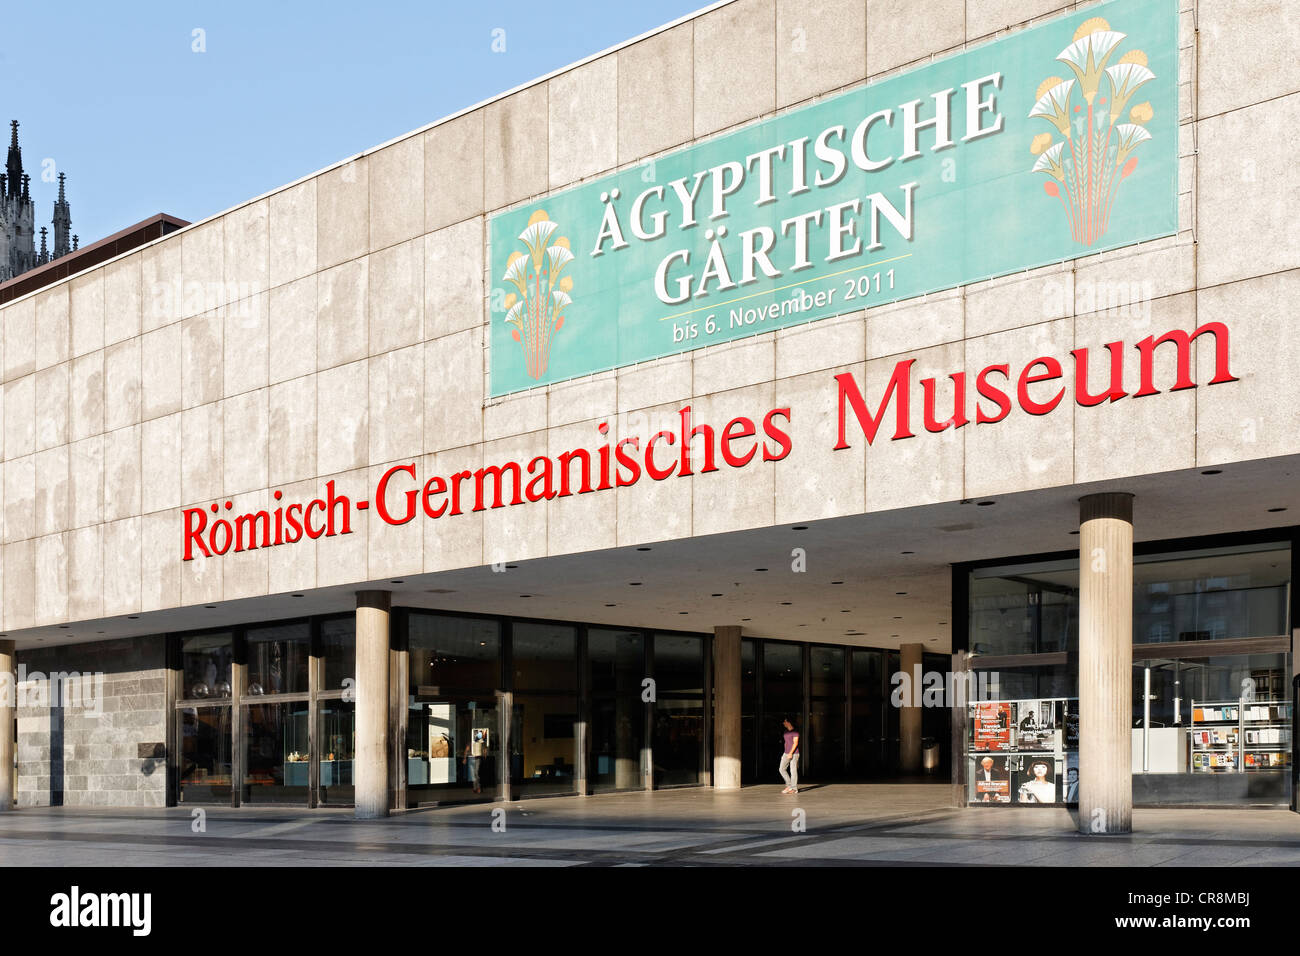 Roemisch Germanisches Museum oder römisch-germanischen Museums, Roncalli-Platz square, Köln, Nordrhein-Westfalen, Deutschland, Europa Stockfoto